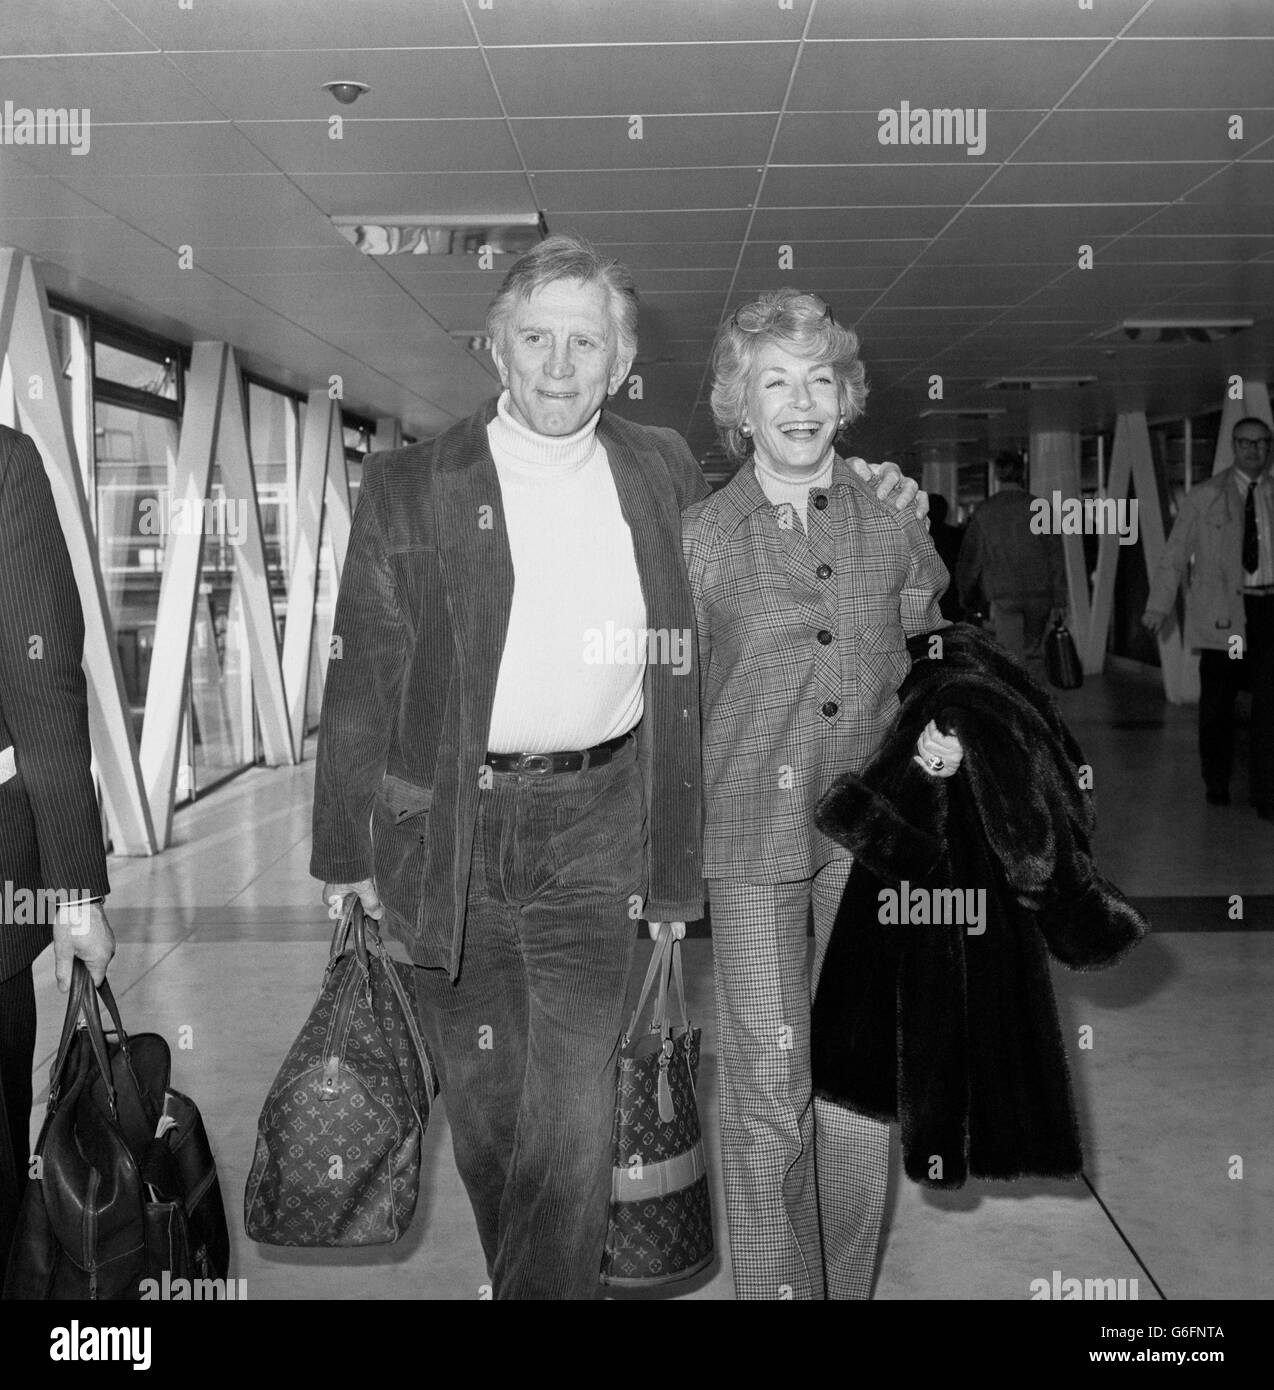 El actor de Hollywood Kirk Douglas, de 60 años, con su esposa Anne en el Aeropuerto Heathrow de Londres, donde volaban de regreso a Nueva York. Foto de stock